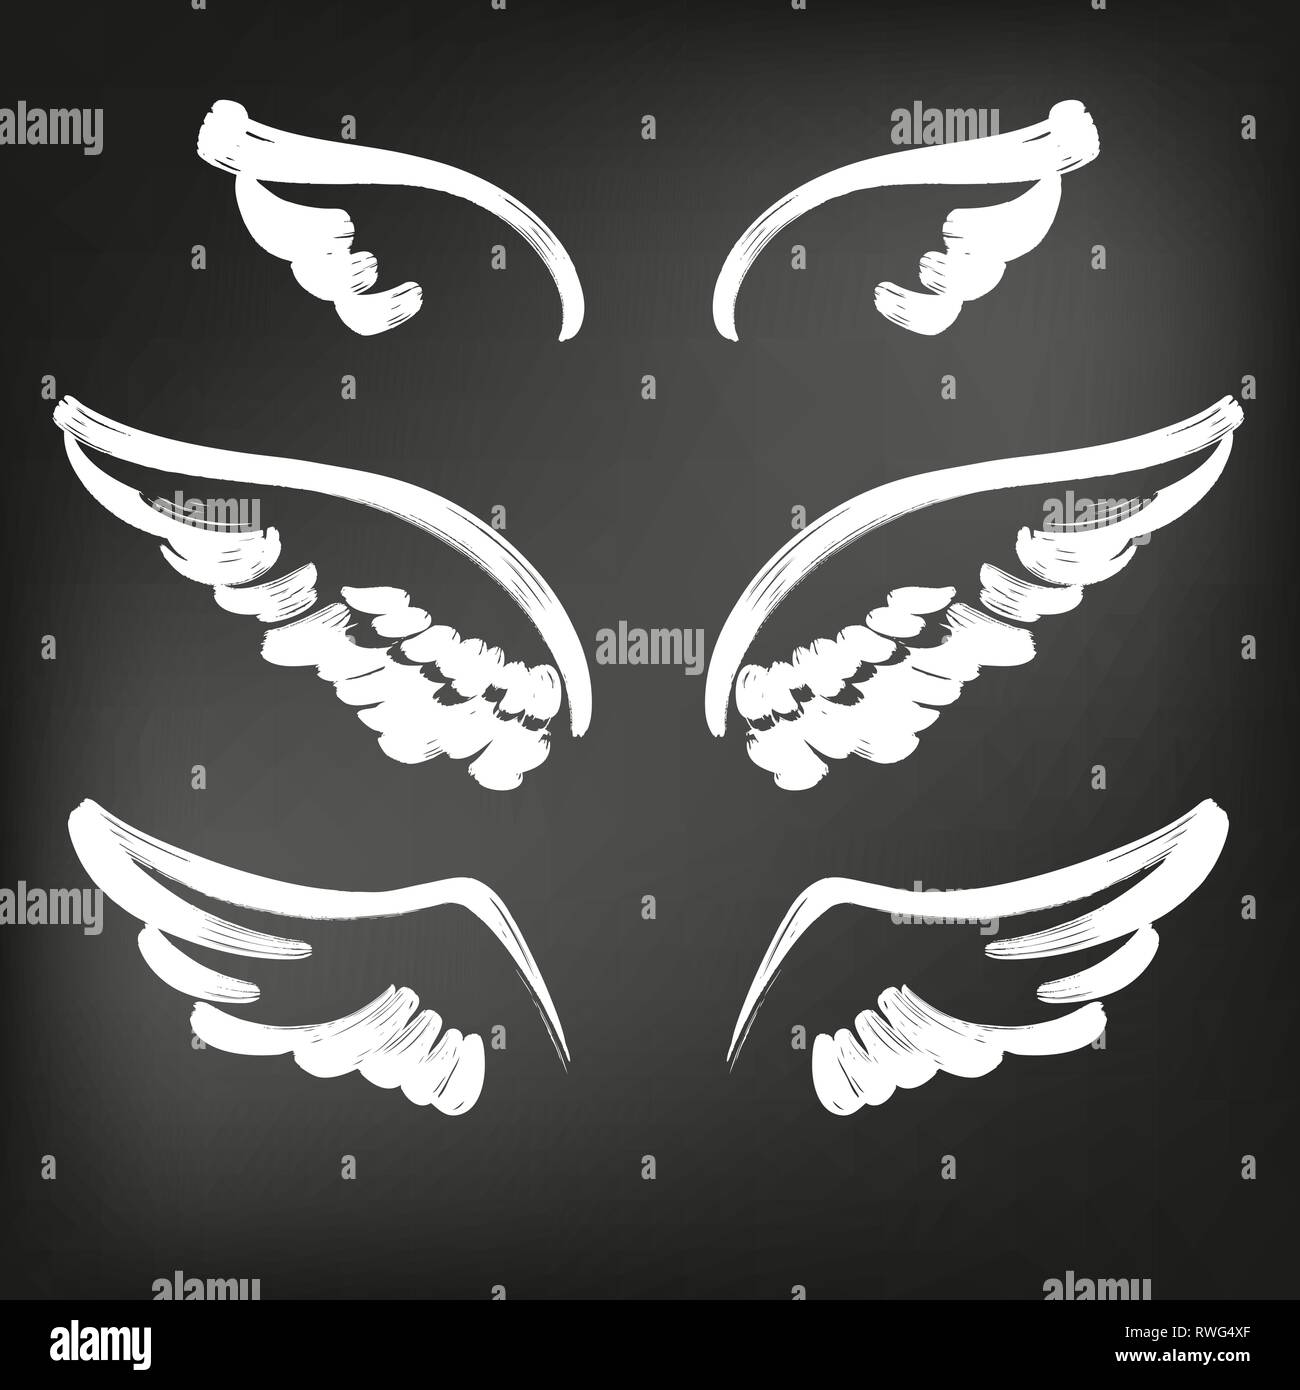 L'icône d'ailes d'ange collection croquis, résumé ailes jeu de croquis icon collection cartoonhand dessiné vector illustration croquis, tracé à la craie sur un fond noir Illustration de Vecteur